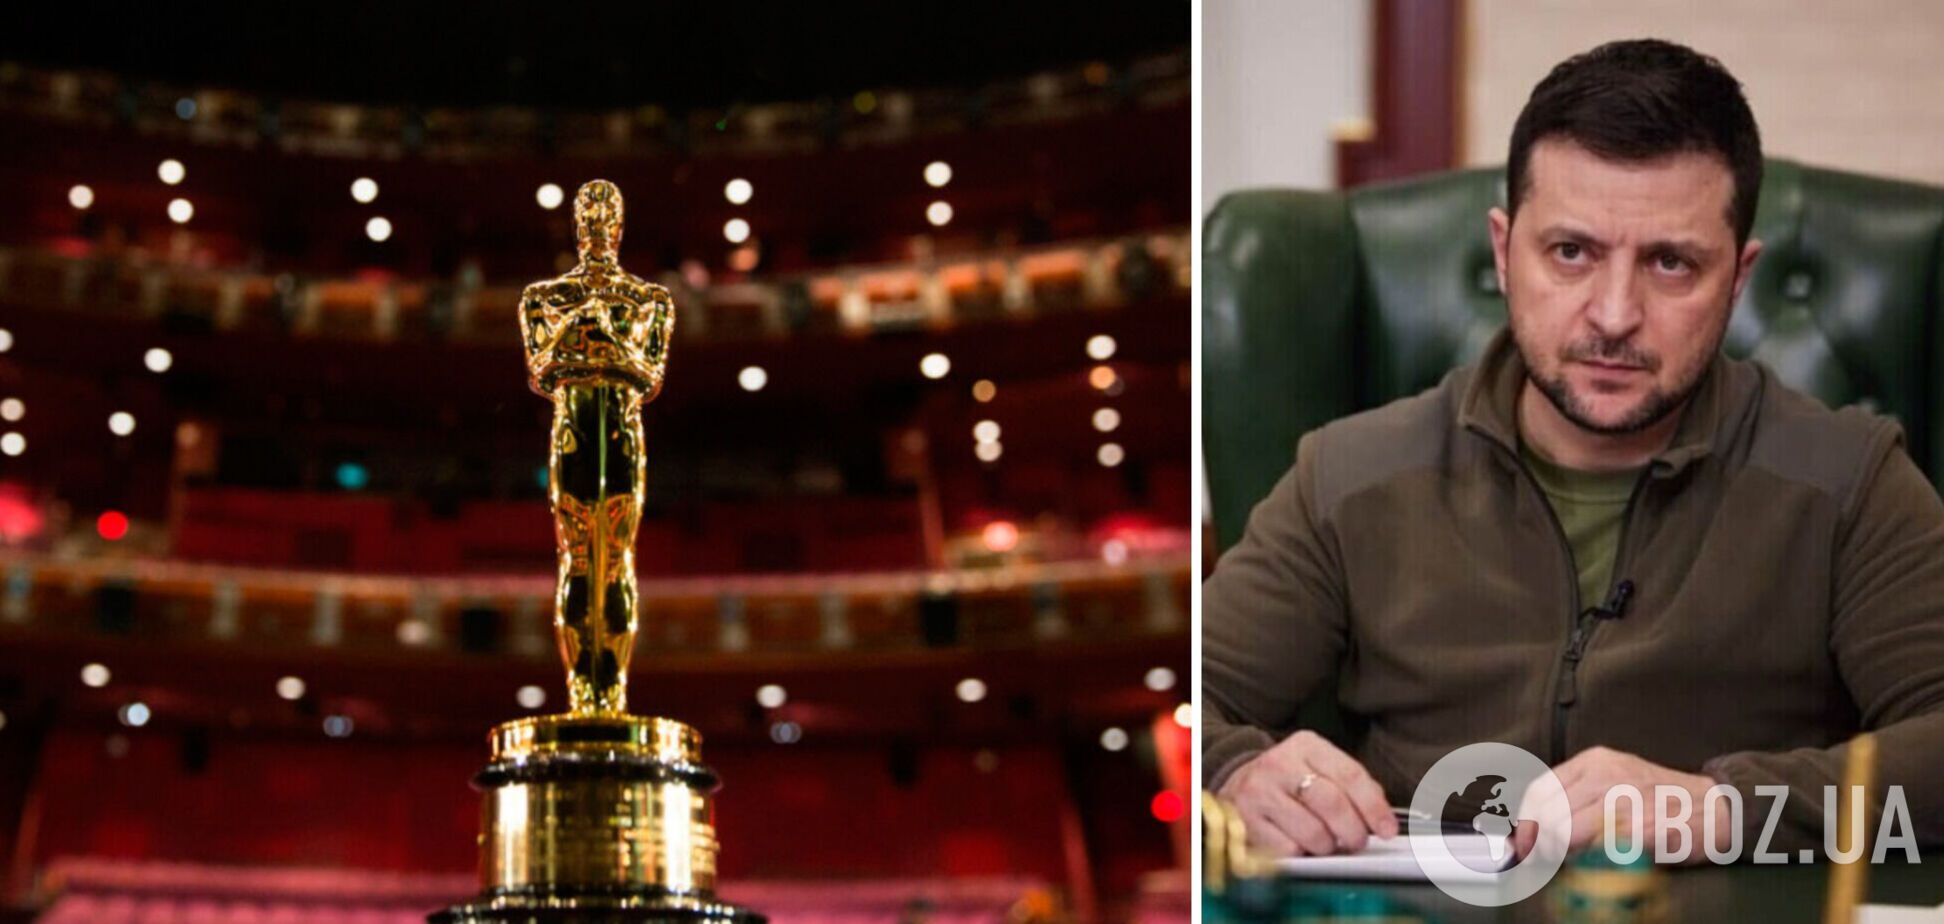 Організатори кінопремії 'Оскар' знову відмовили Зеленському у виступі під час церемонії нагородження – Variety